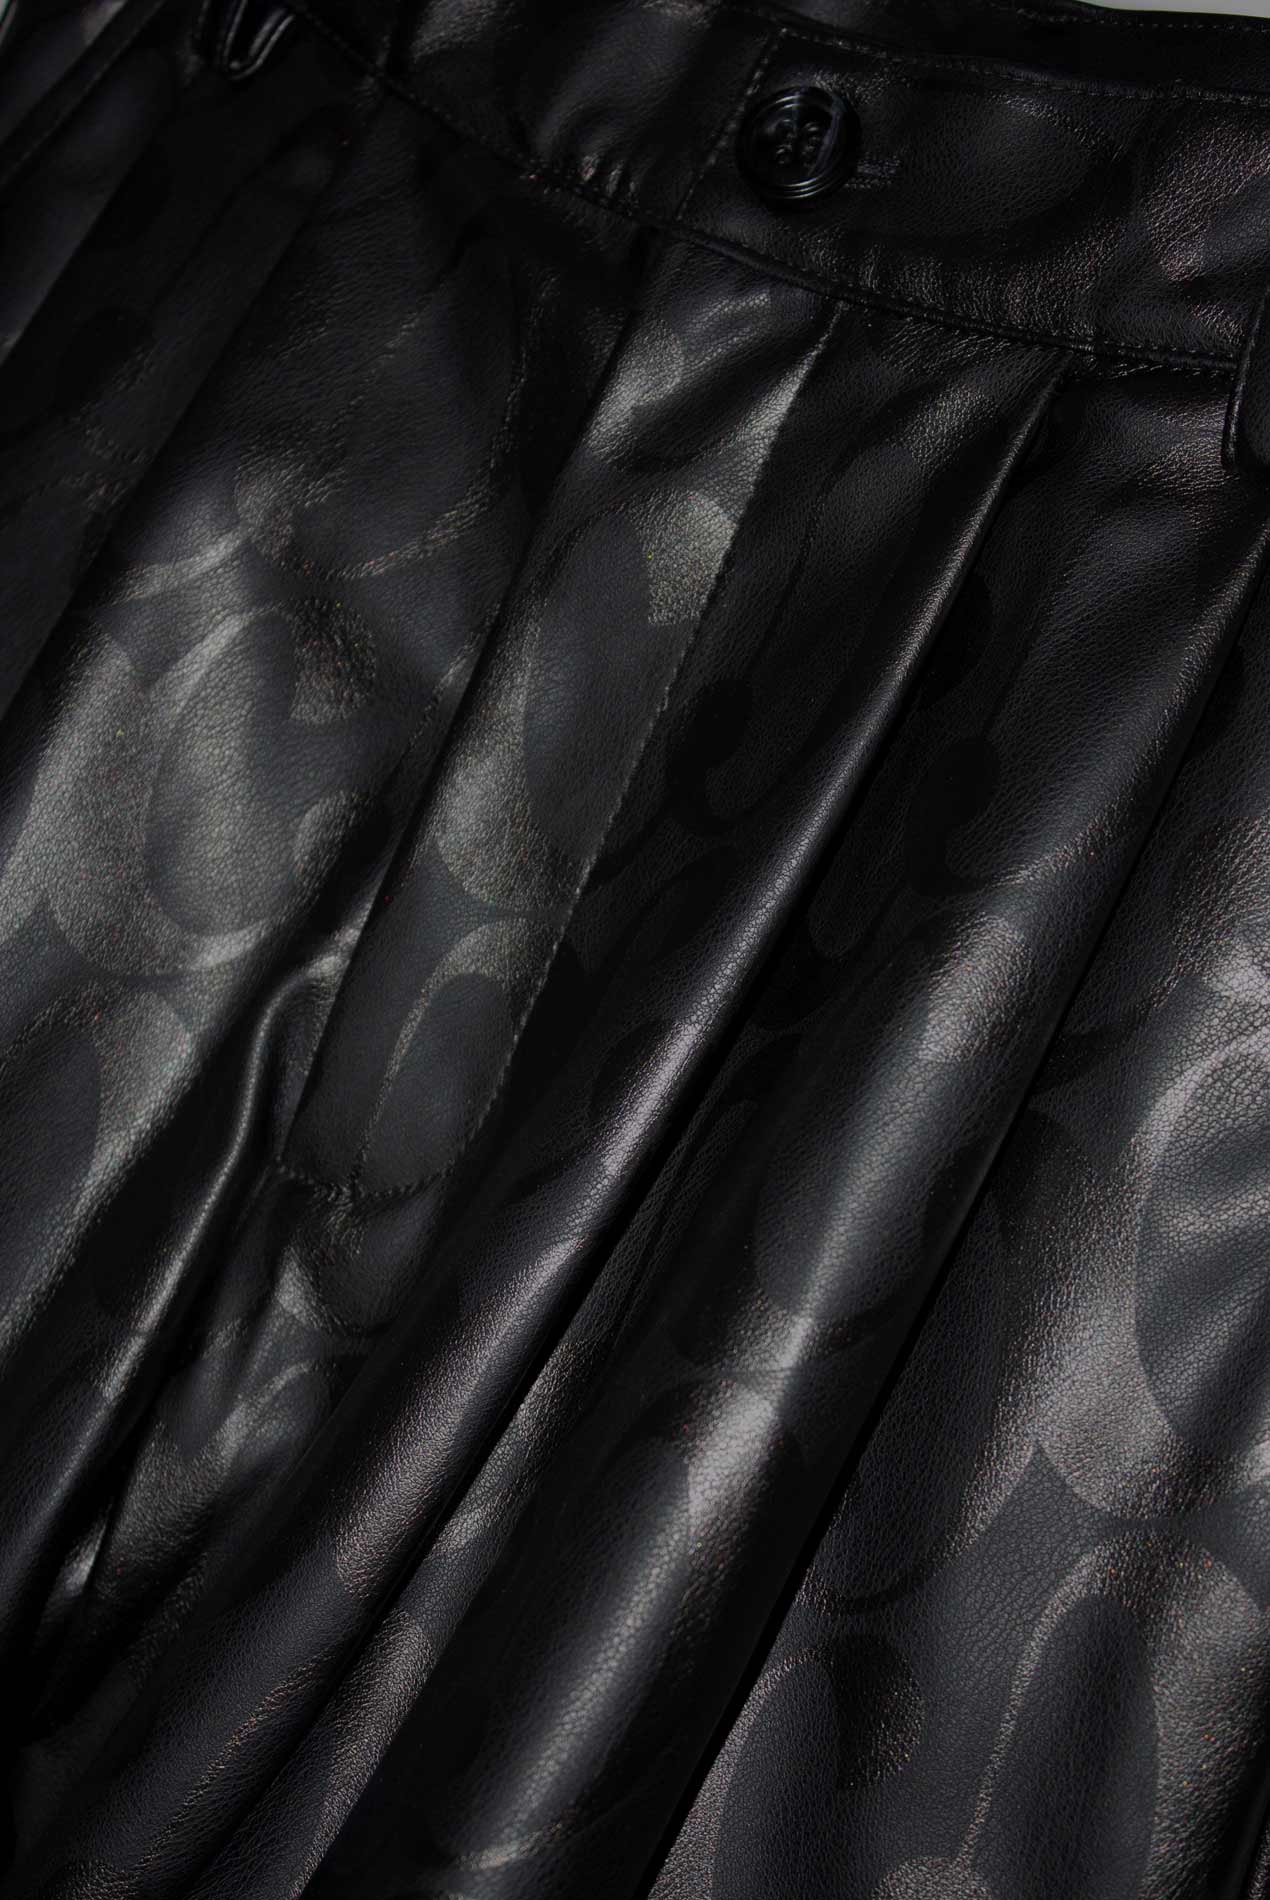 Blossom Shorts in Spell Print Black